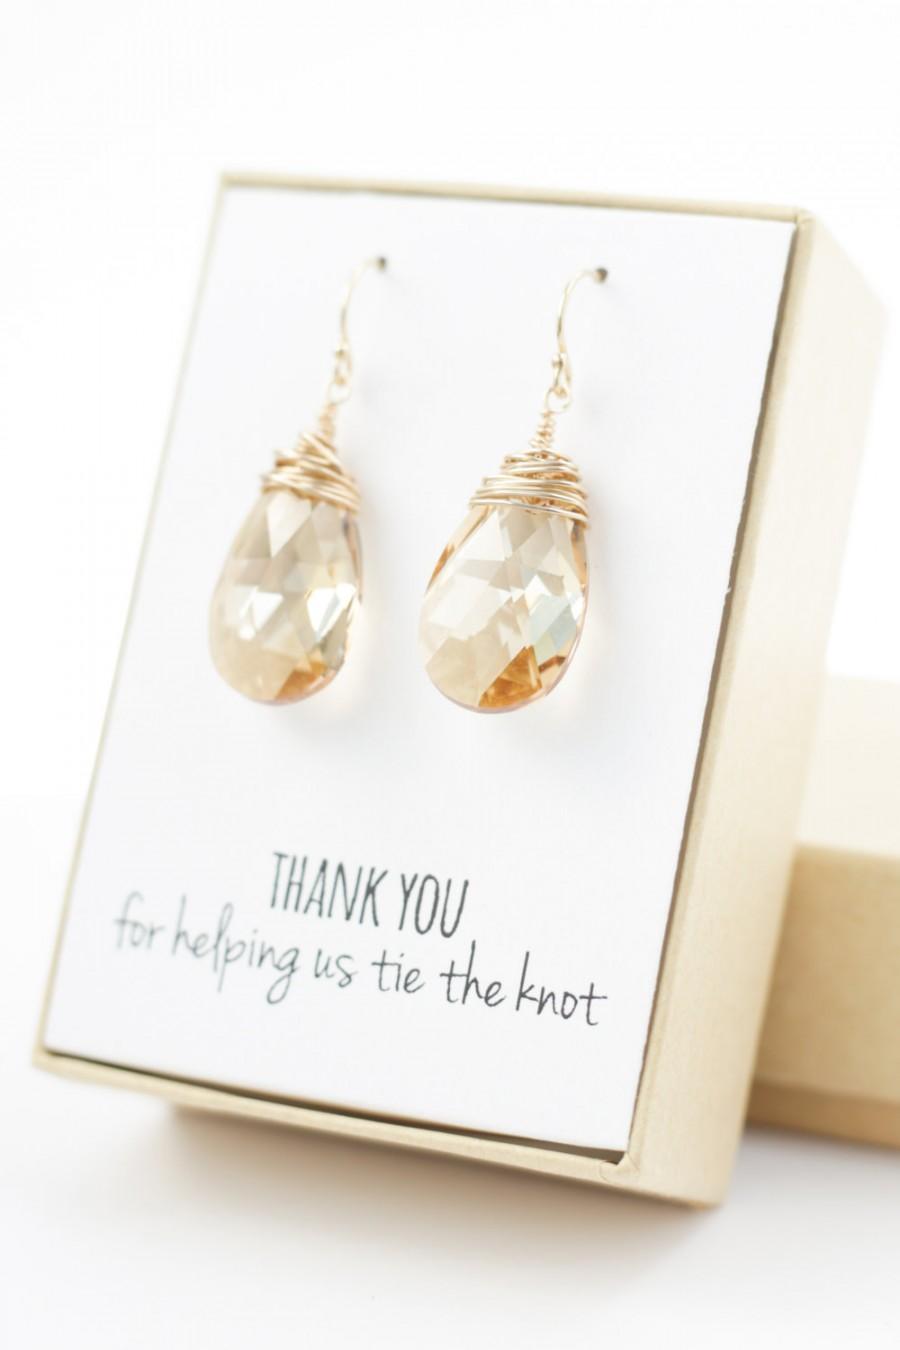 Свадьба - Champagne Gold Swarovski Crystal Earrings - Large Crystal Earrings - Champagne Swarovski Earrings - Wire-Wrapped - Bridesmaid Earrings Gift